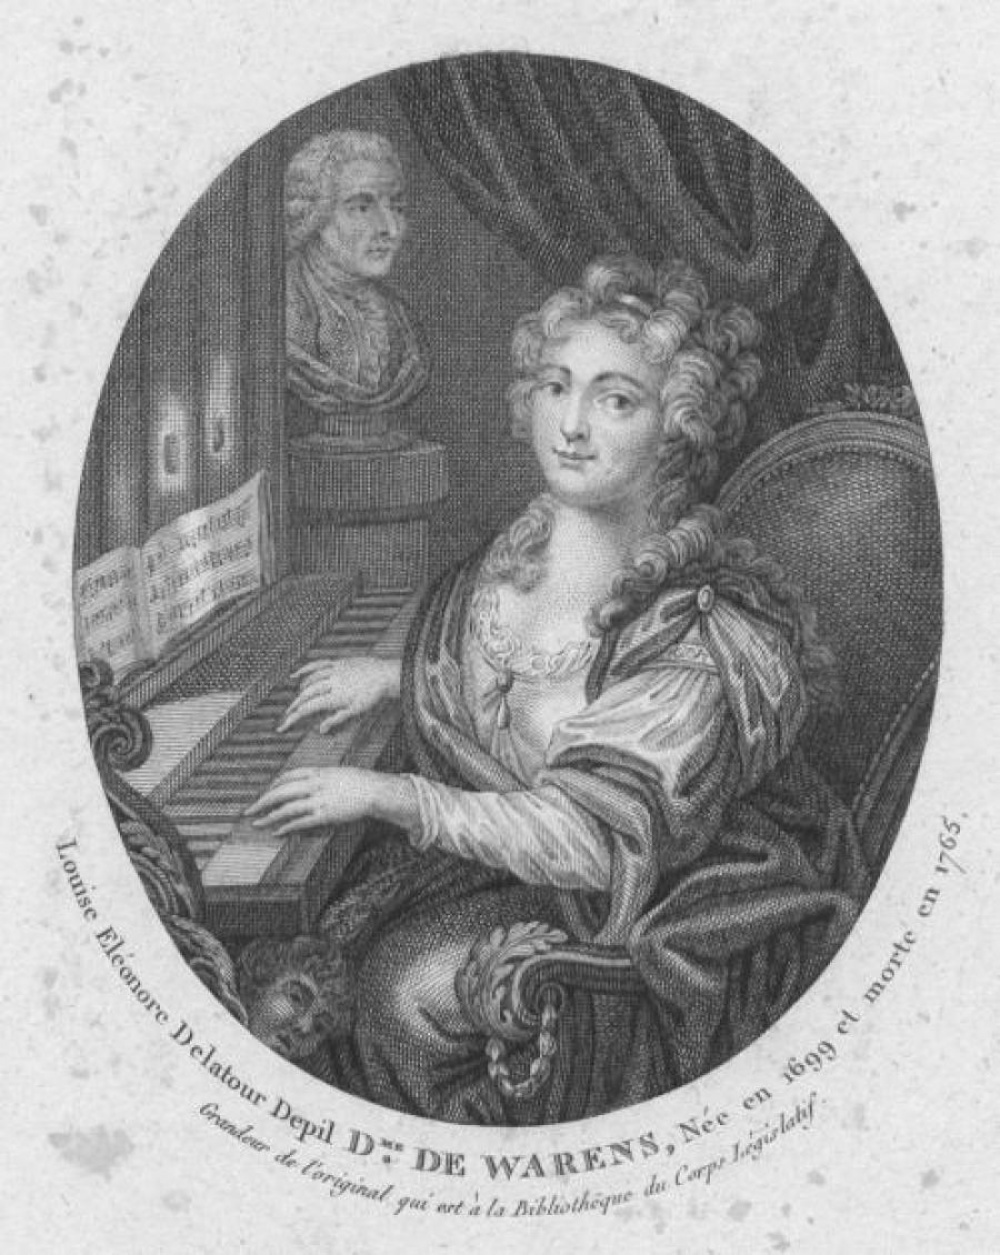 [Portrait de Louise Éléonore de la Tour du Pil Warens]. s.d. 16 x 24,5 cm. Bibliothèque de Chambéry. EST A 000.287-001